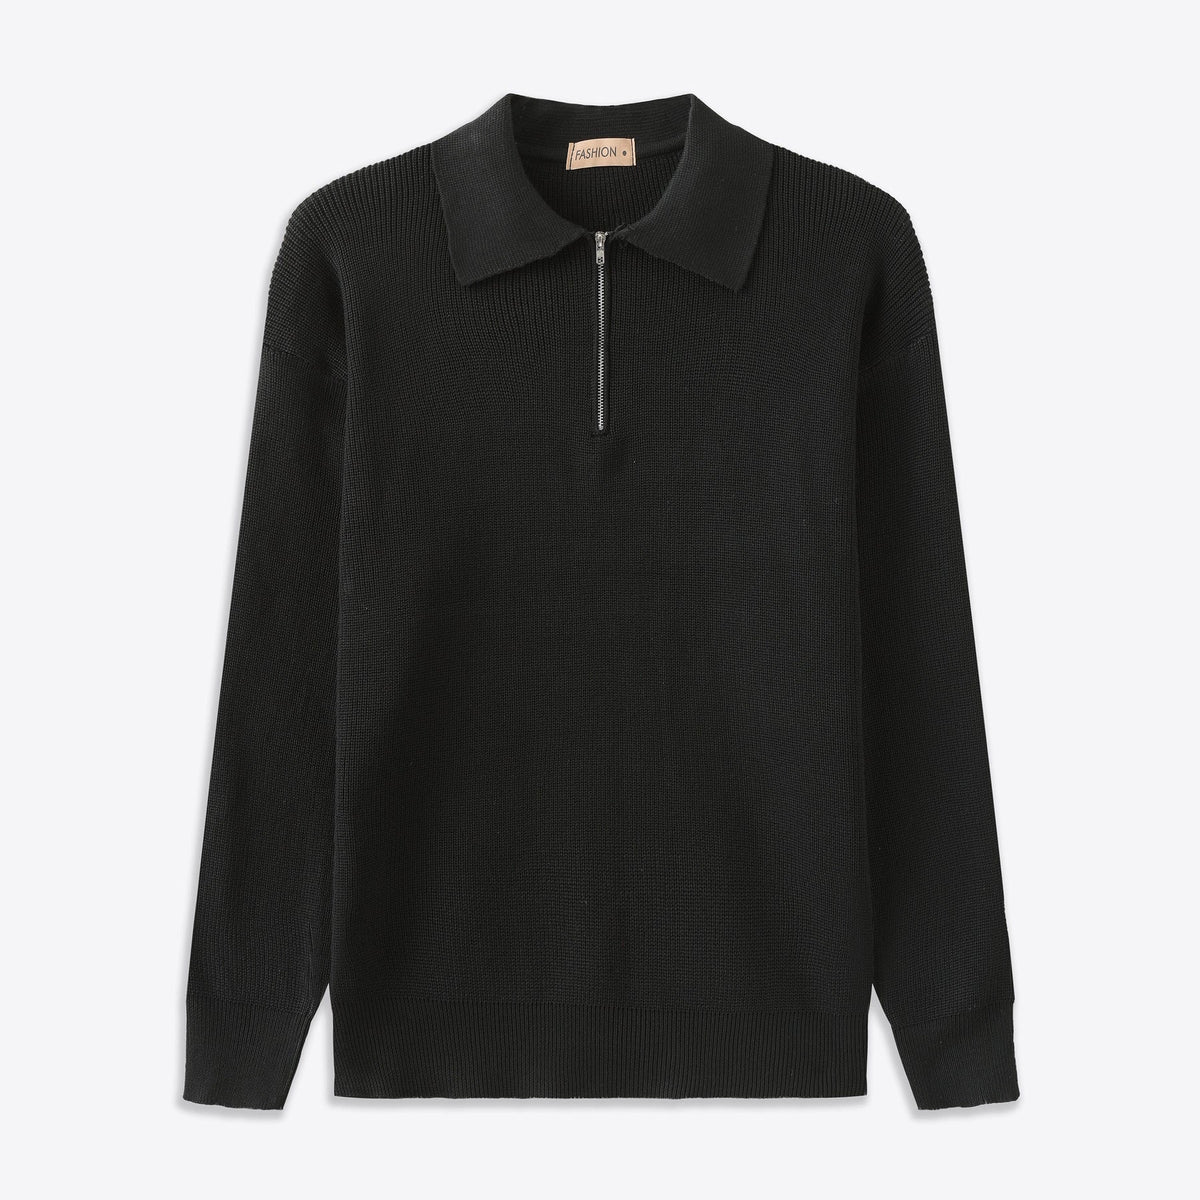 CESARE | Half-Collar Sweater with Zipper